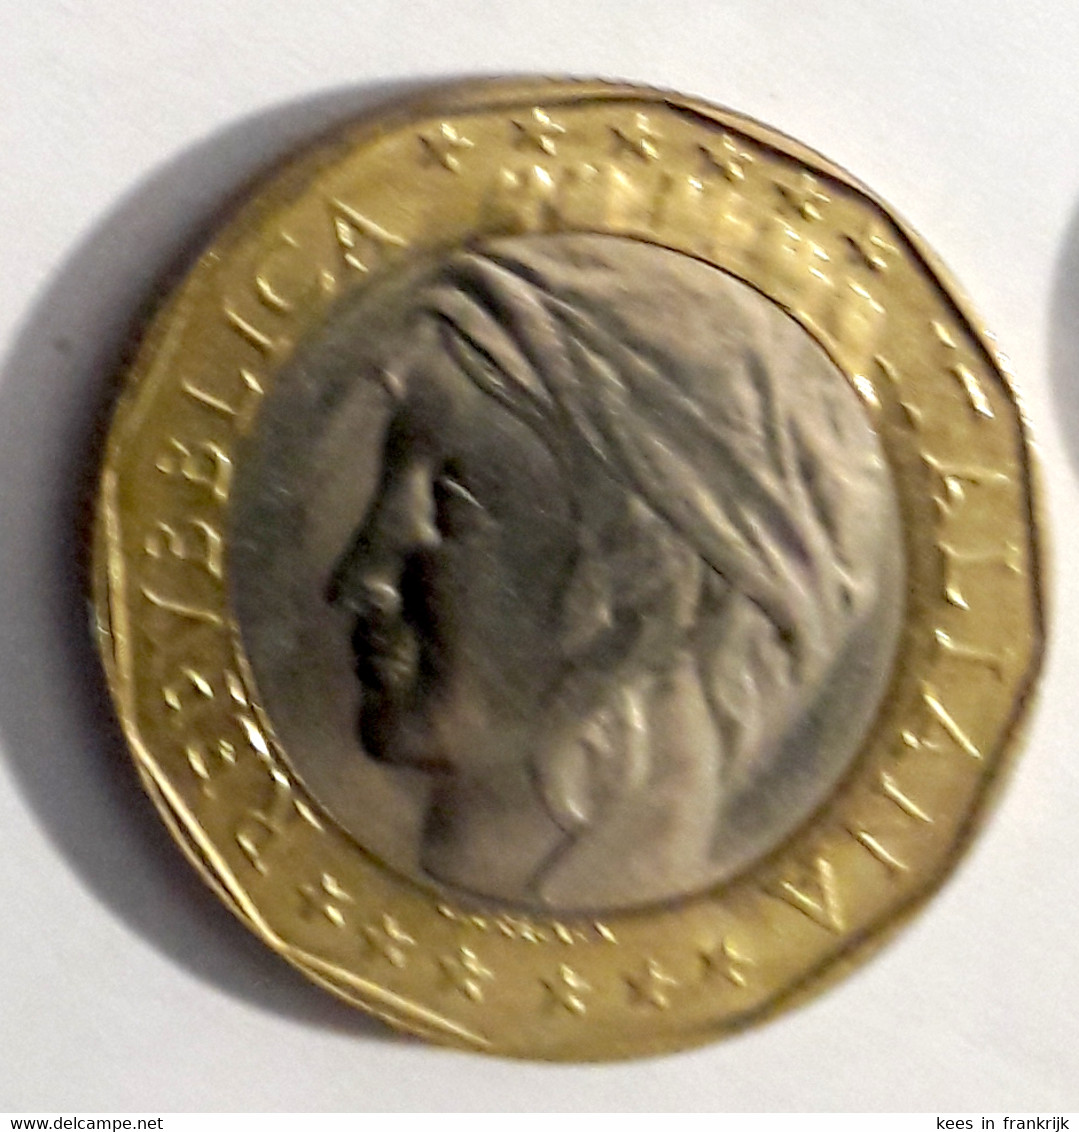 Italie - Italia - 1000 Lire 1997 - 1 000 Liras